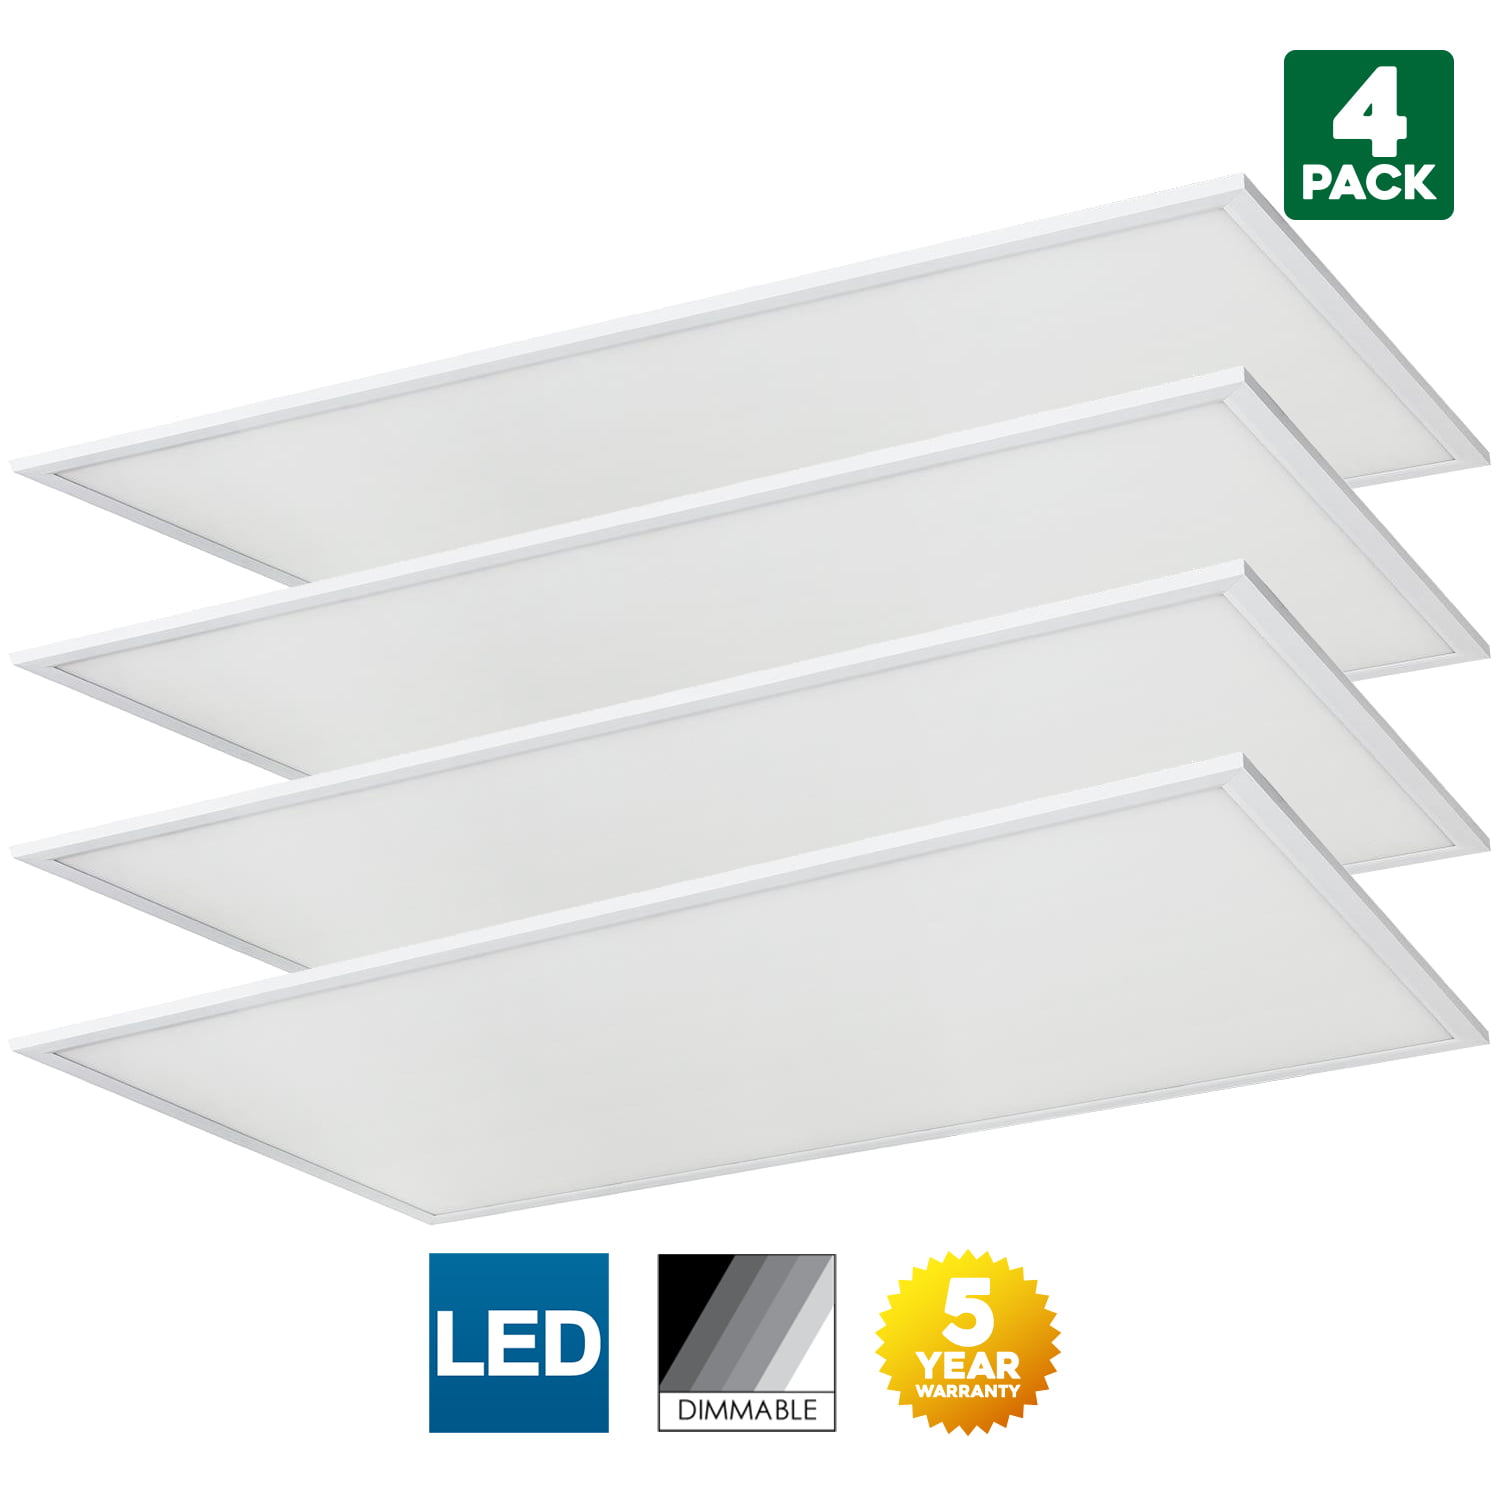 DLC Listed 2x4 Feet Sunlite LED Light Panel 50,000 Hour Average Life Span 3500K Warm White 2 Pack 60 Watt Dimmable 